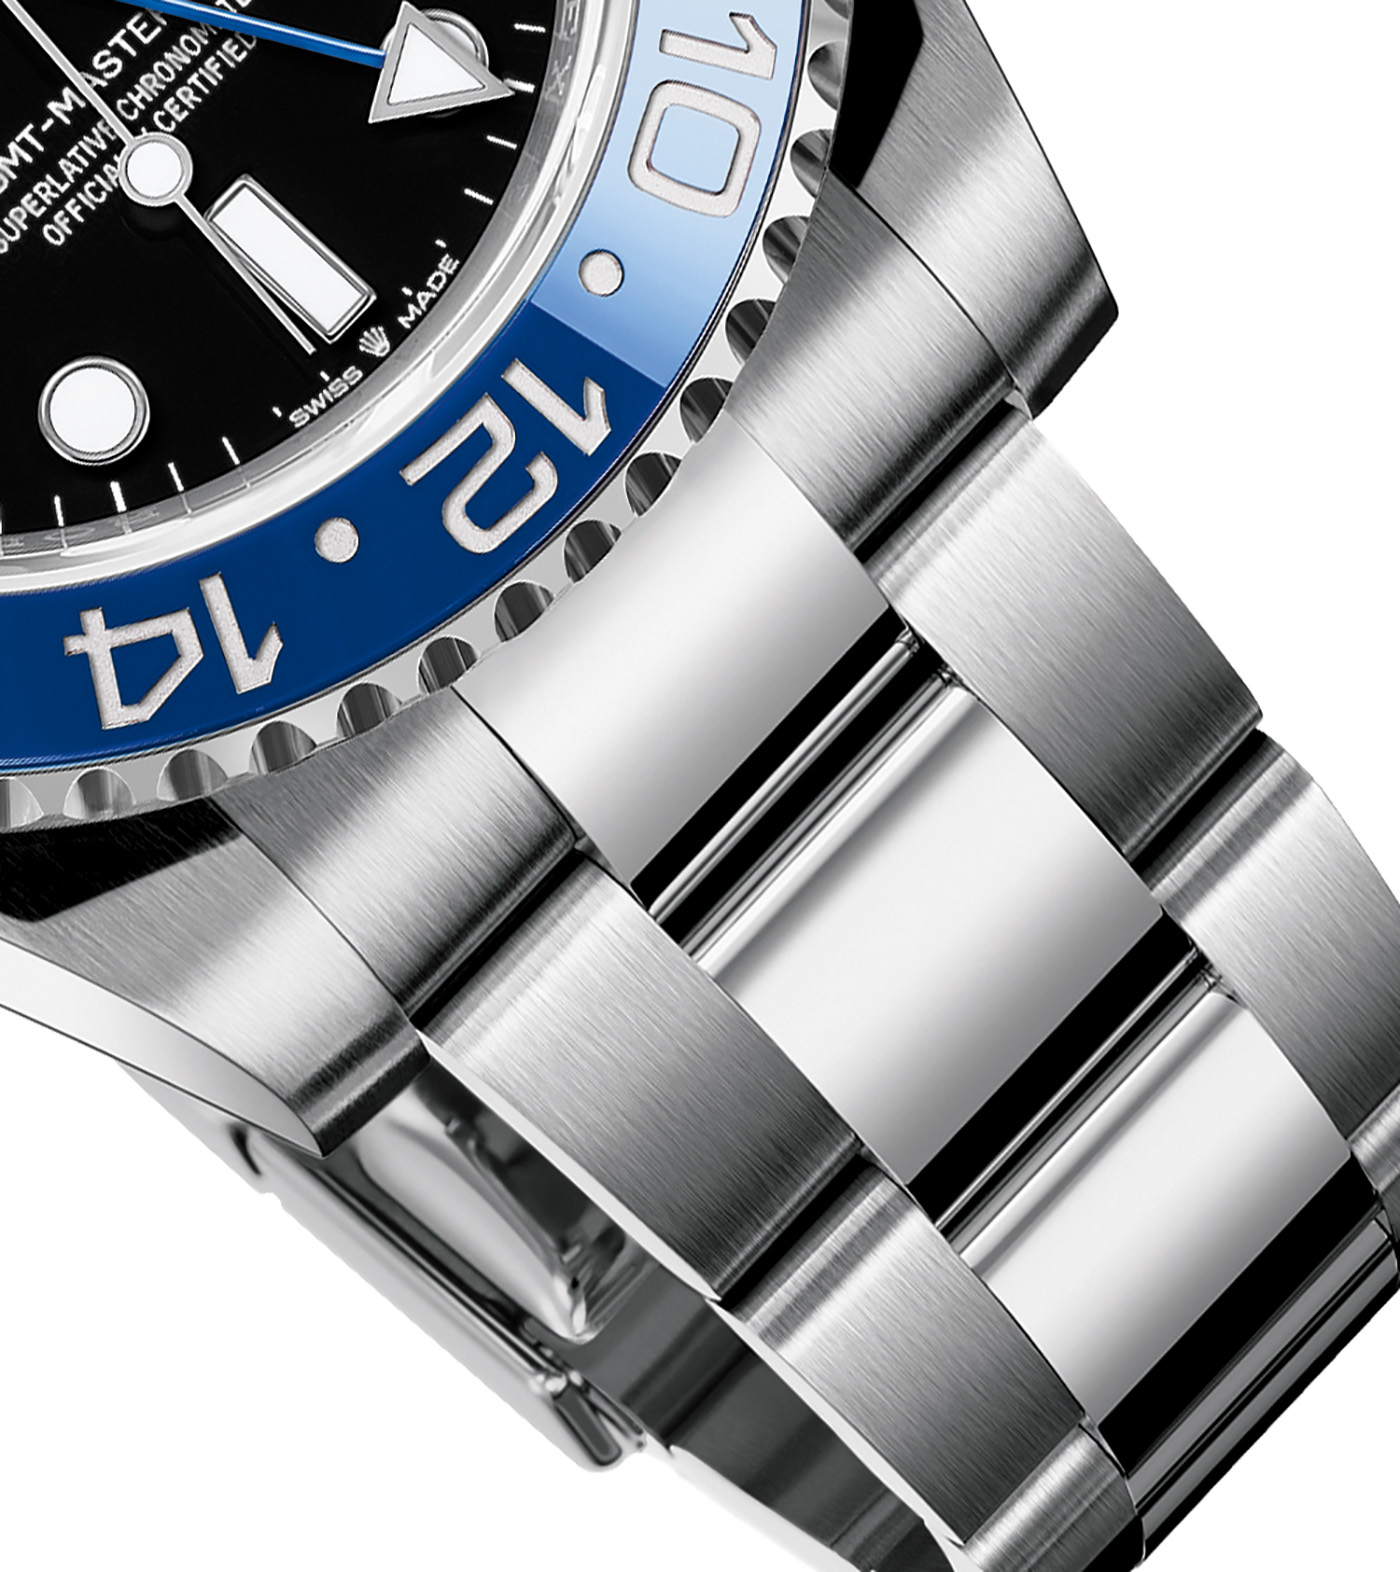 Rolex Stainless Steel Oyster OEM Watch Bracelet